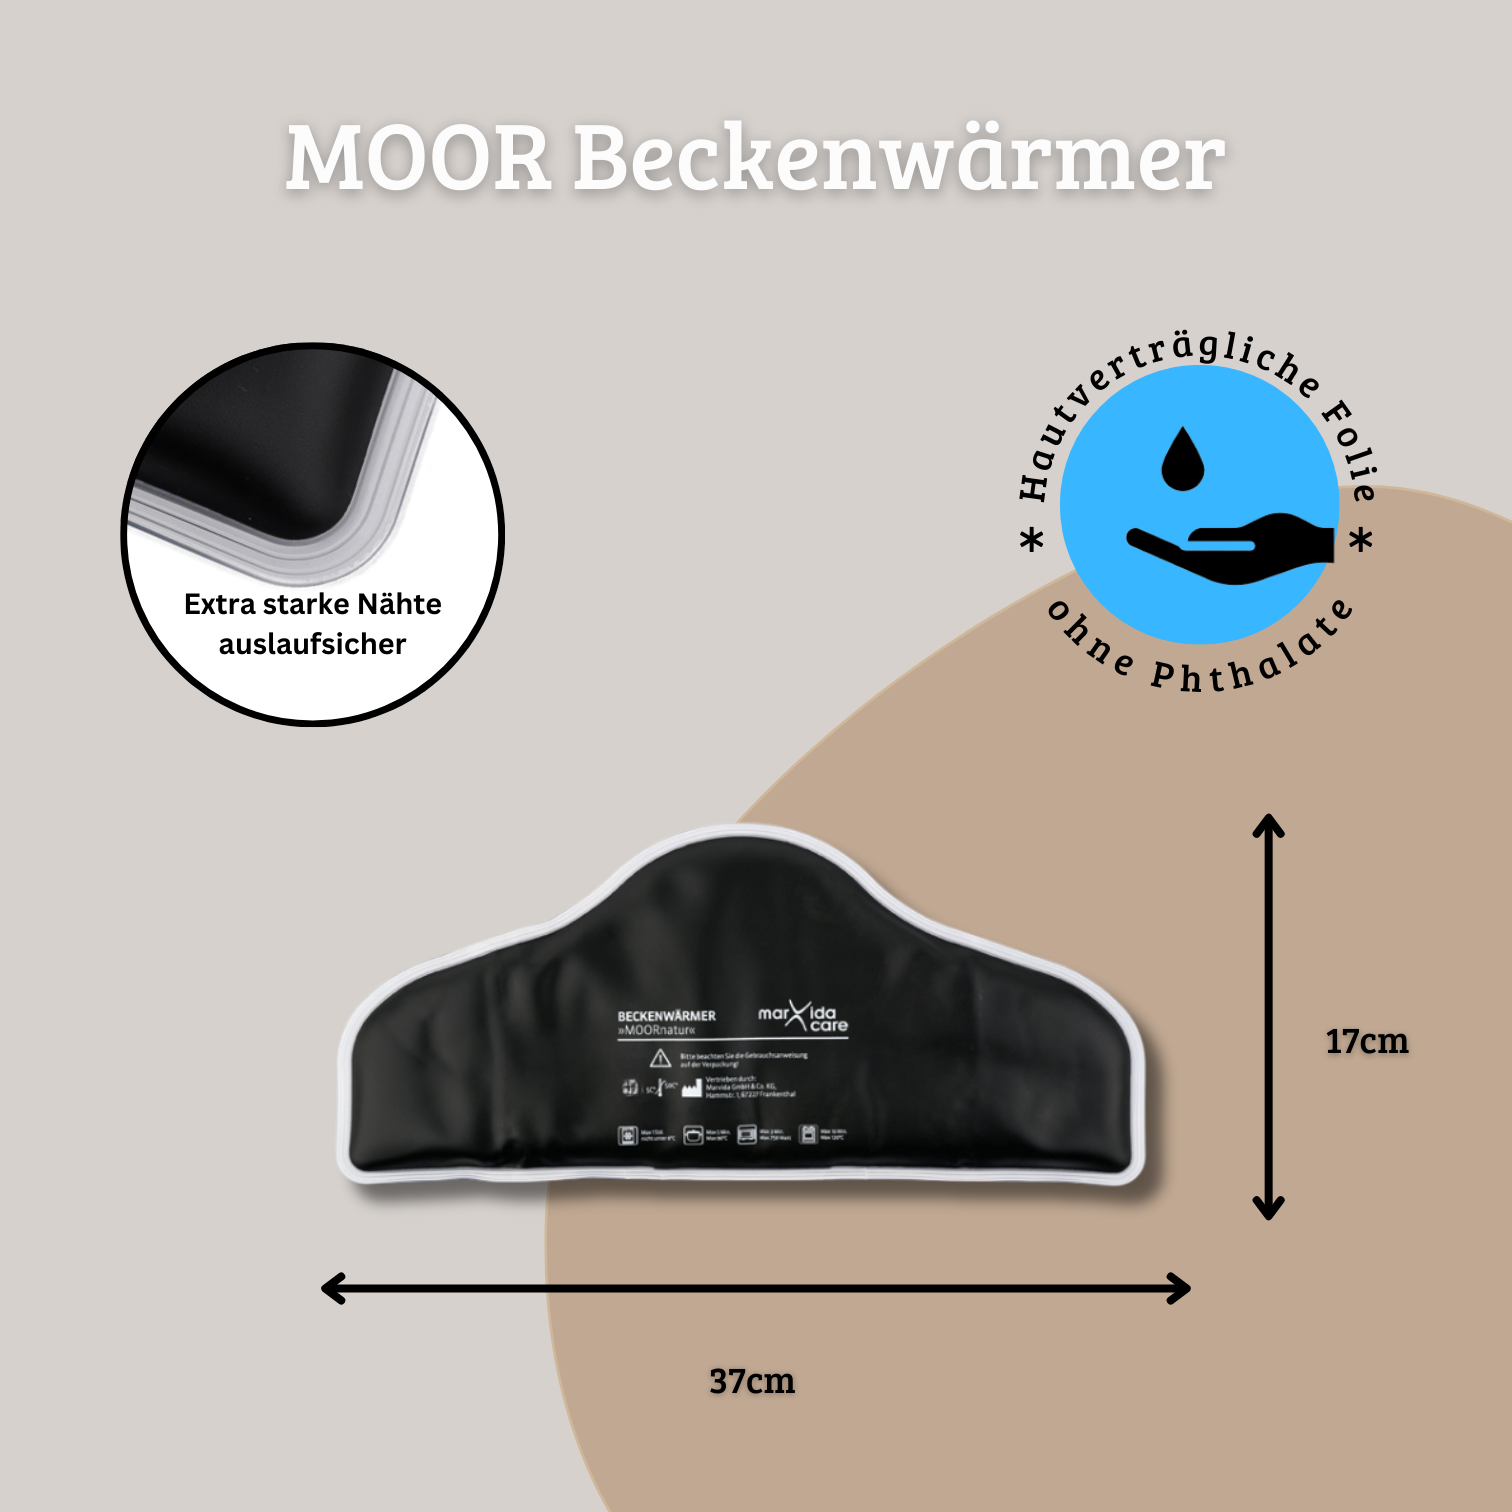 Moor Beckenwärmer +Gratis Baumwollhülle extra weich